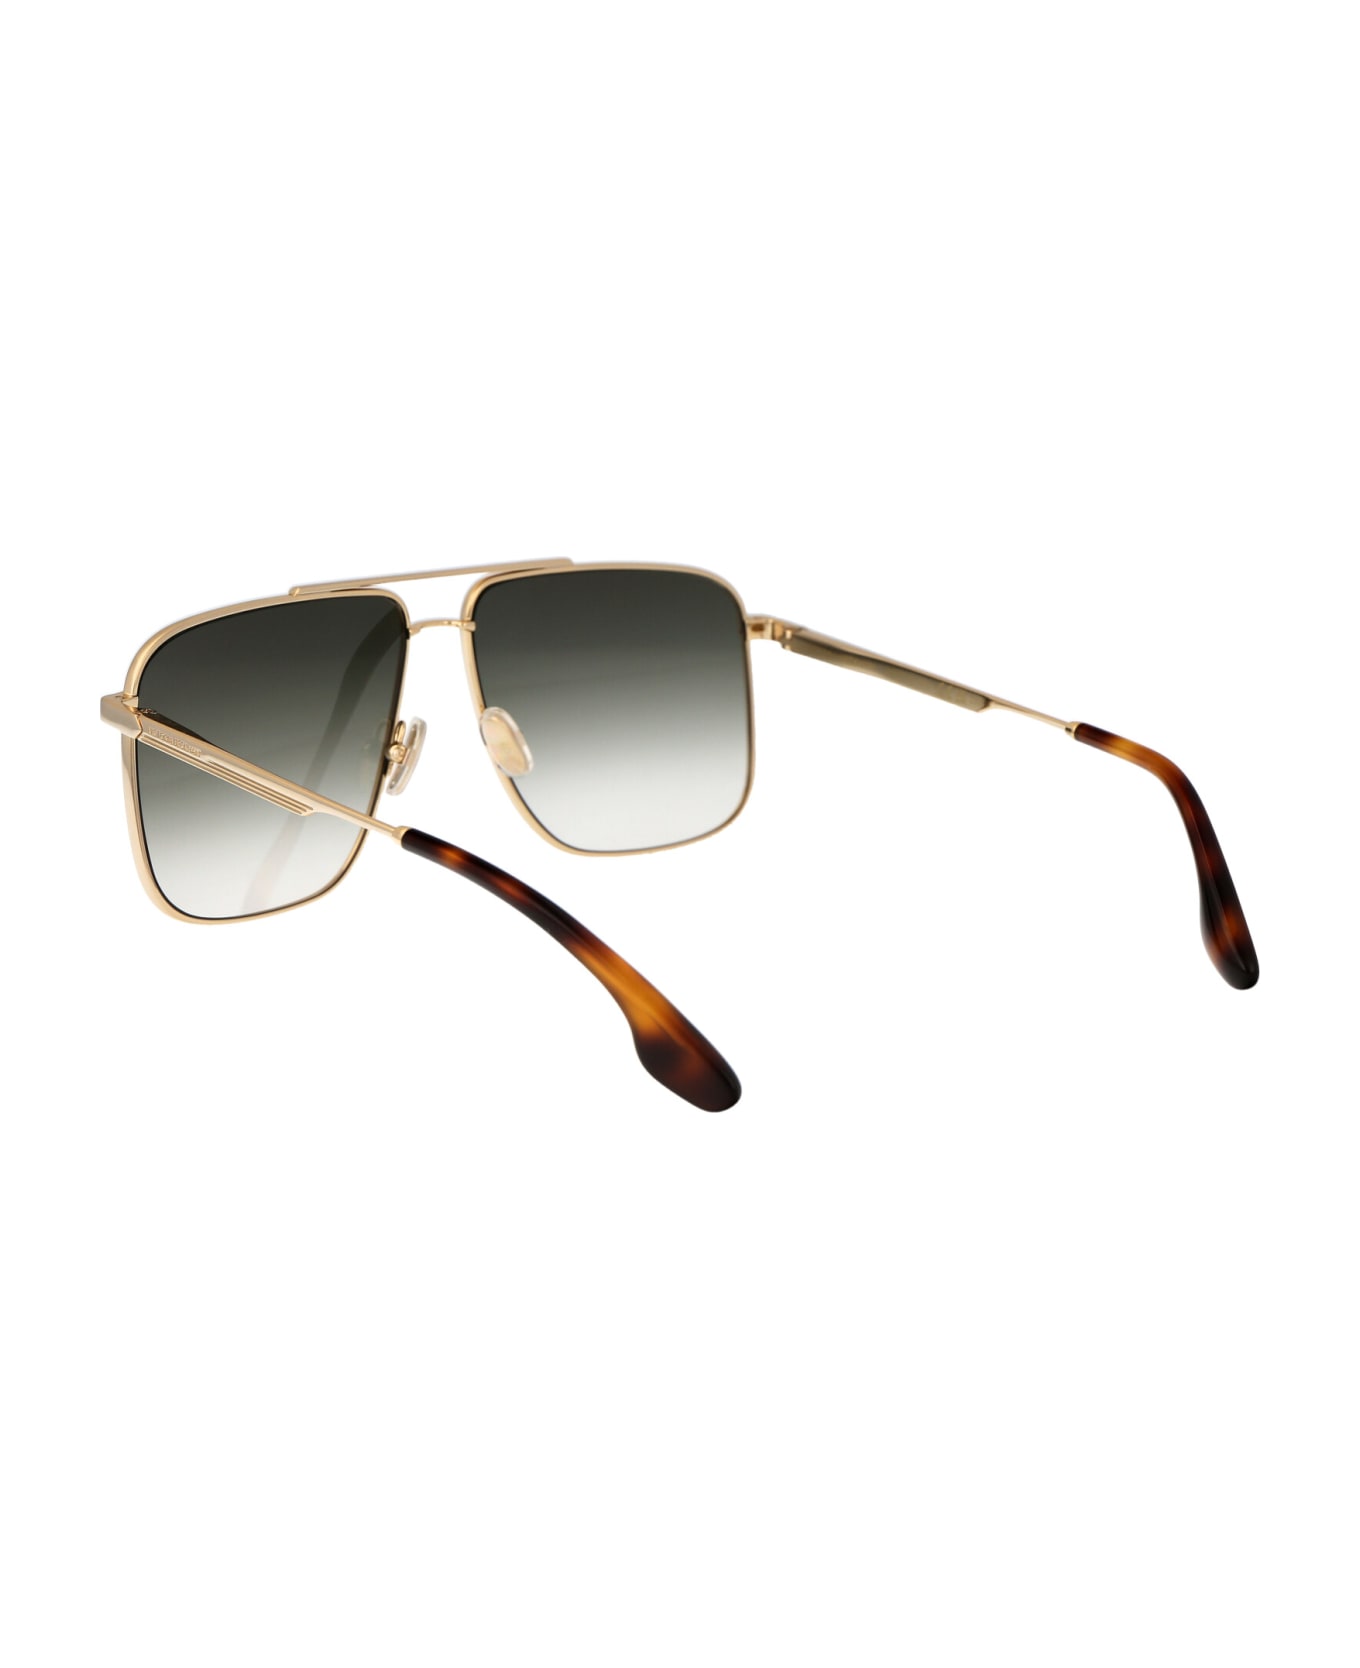 Victoria Beckham Vb240s Sunglasses - 700 GOLD/KHAKI